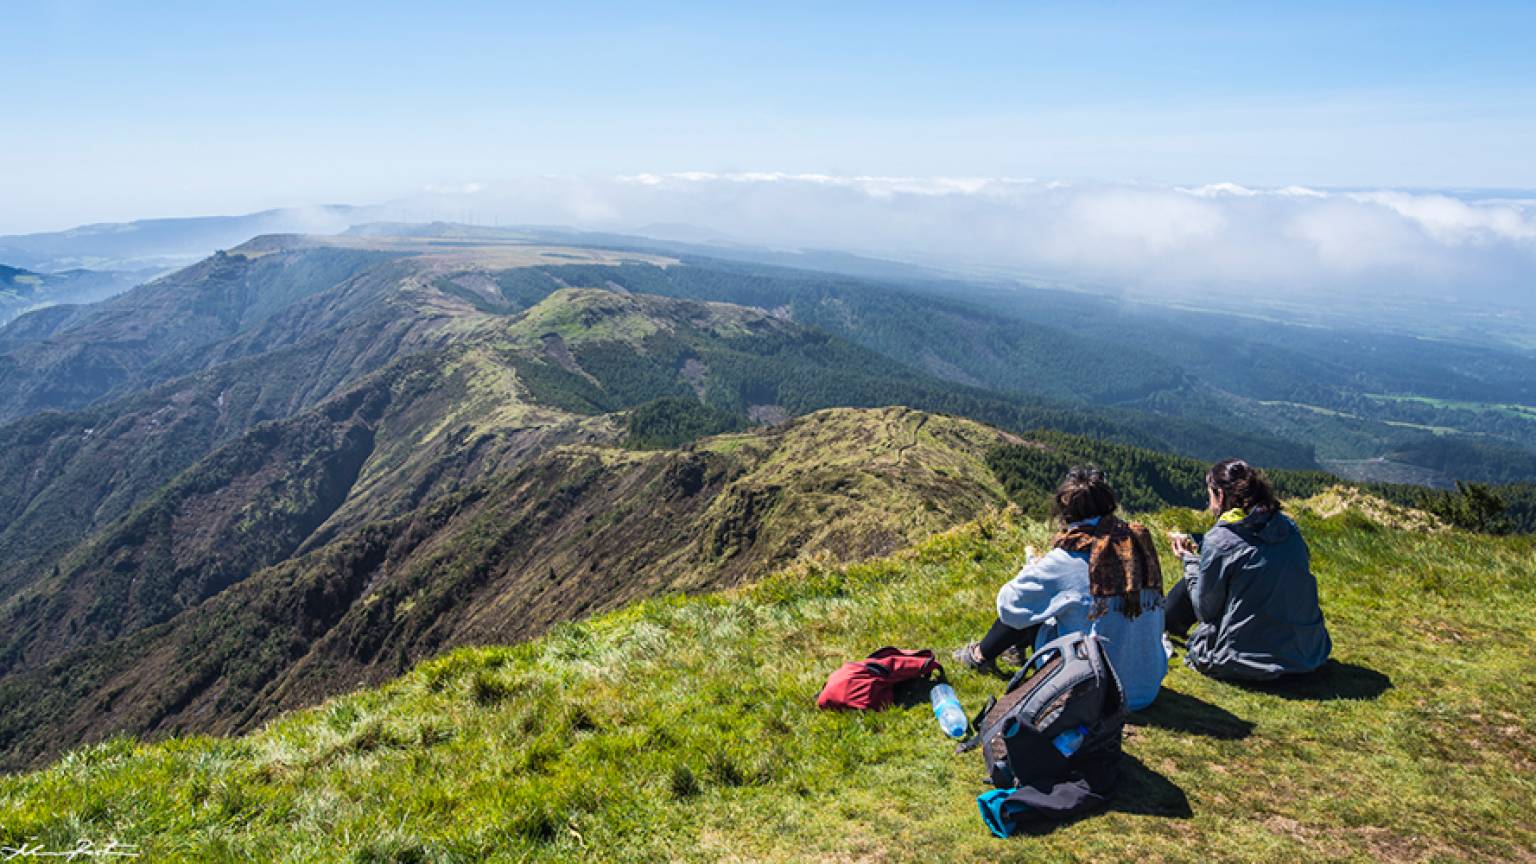 Hike Pico da Vara - Full day